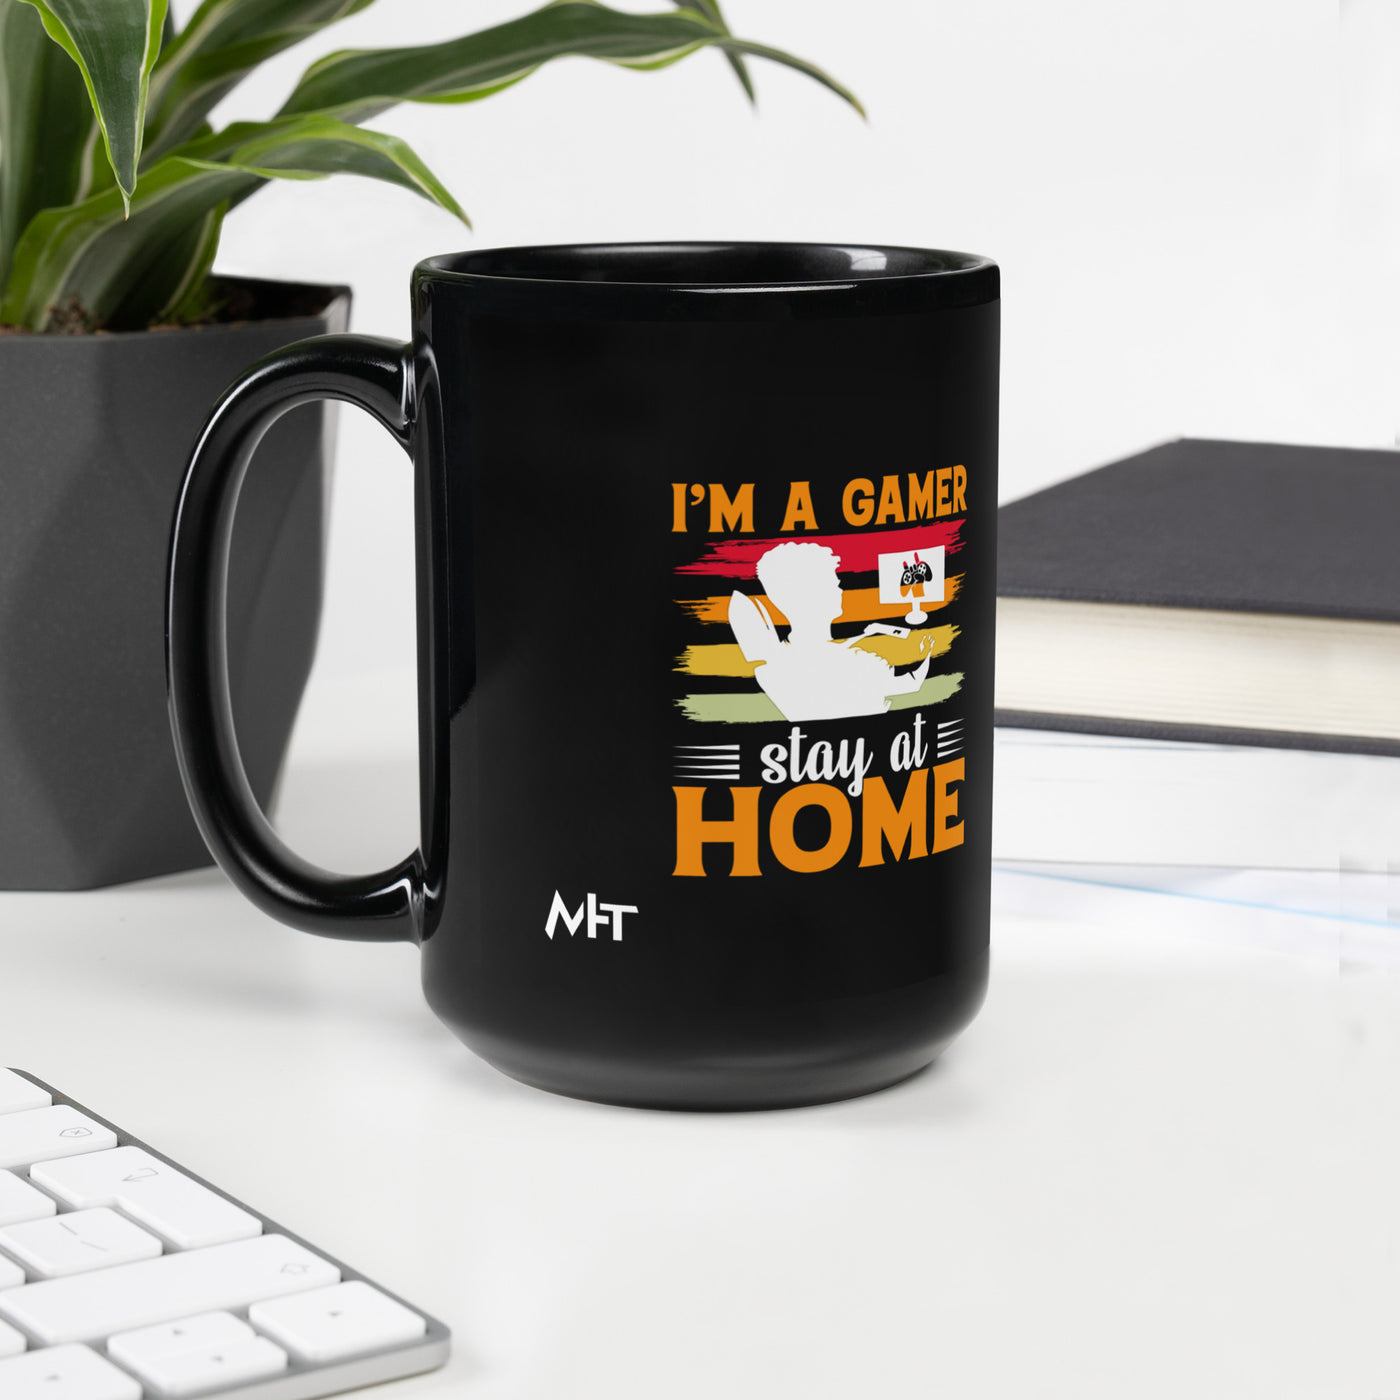 I am a Gamer Stay at Home - Black Glossy Mug